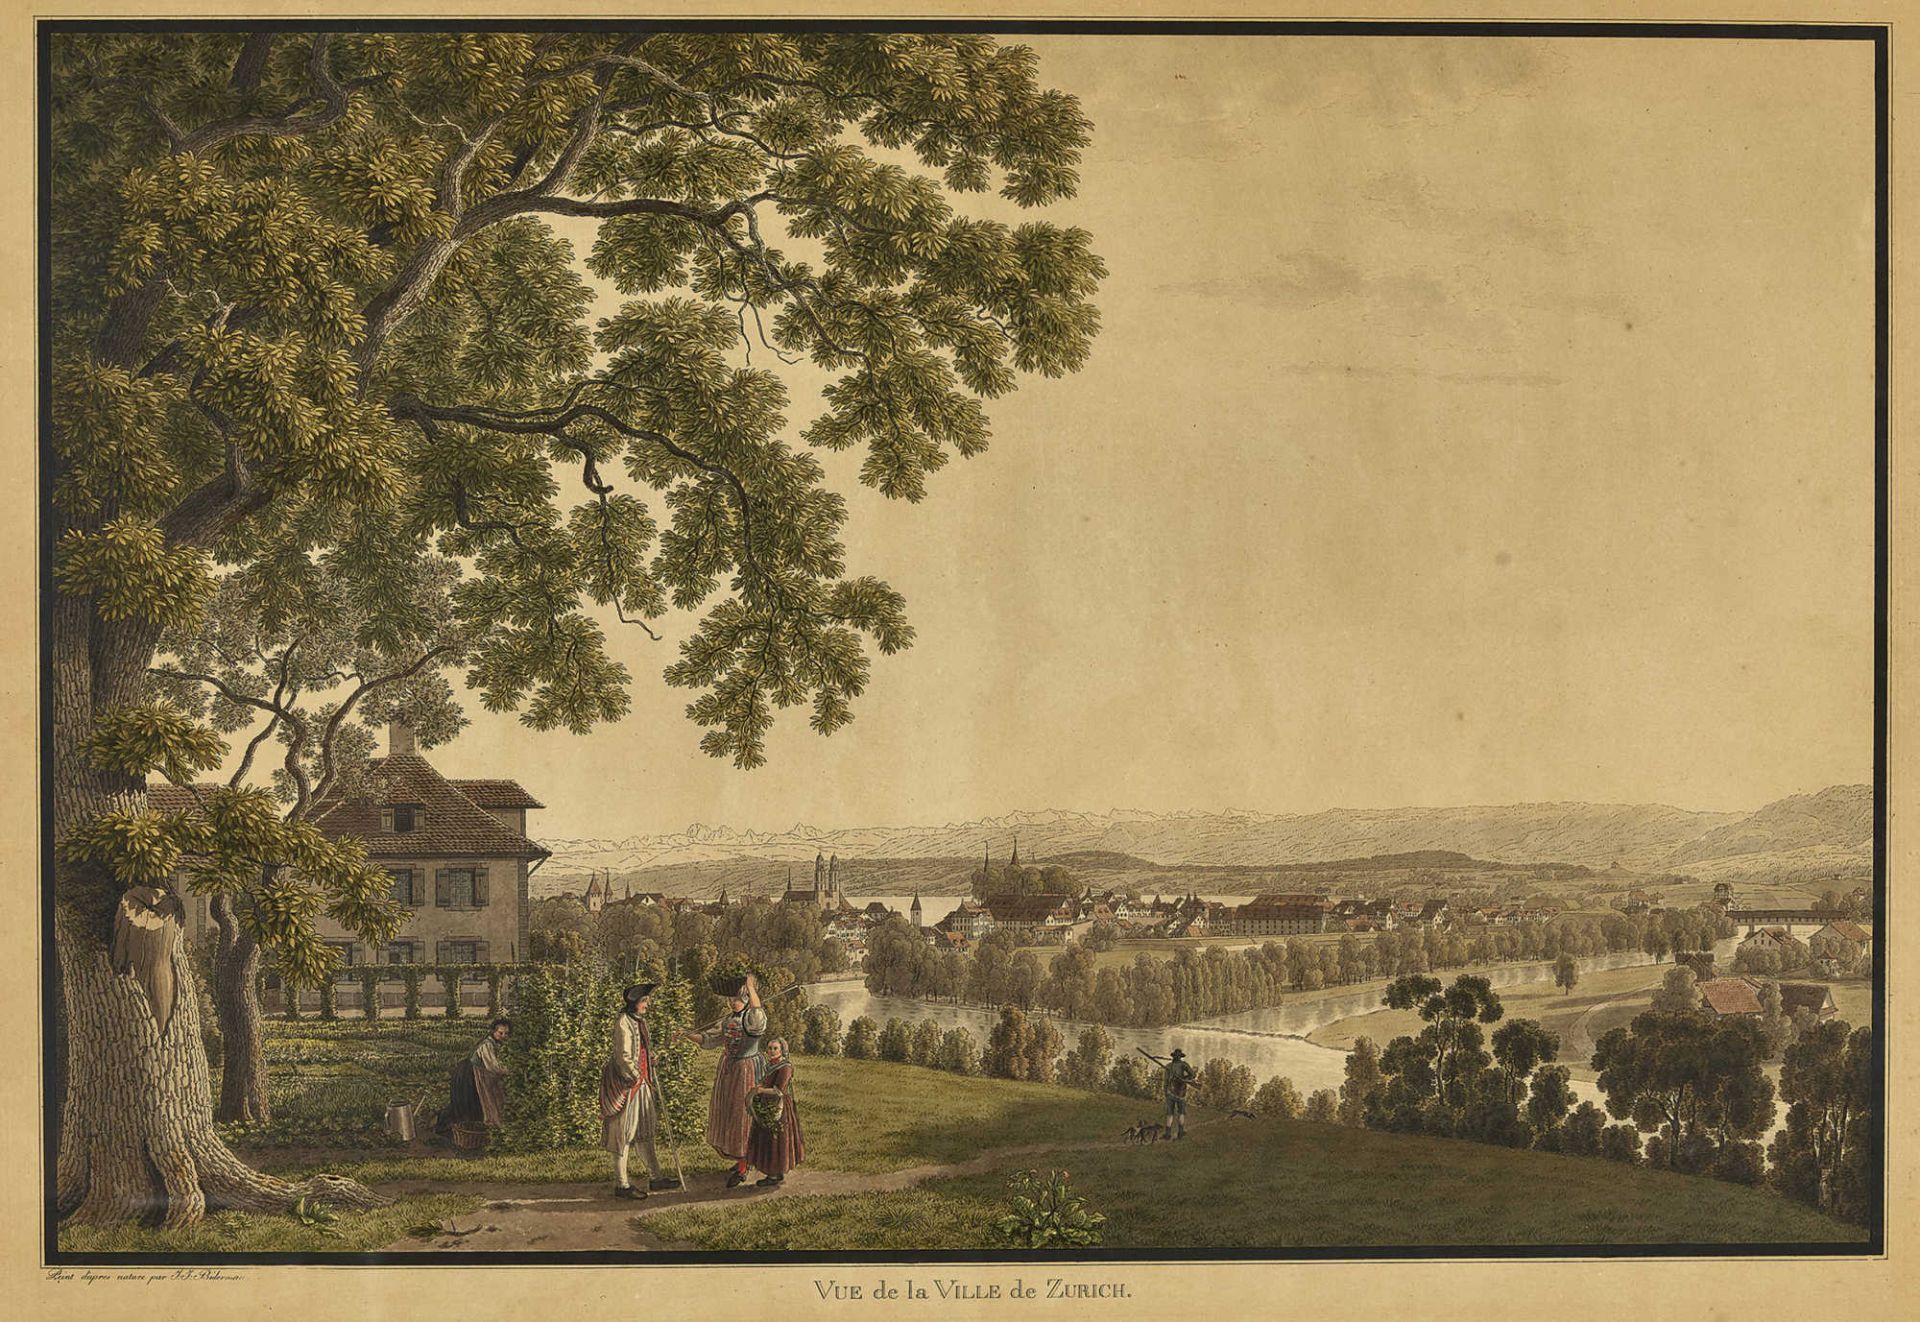 BIEDERMANN, JOHANN JAKOBWinterthur 1763 - 1830 AussersihlVue de la Ville de Zurich.